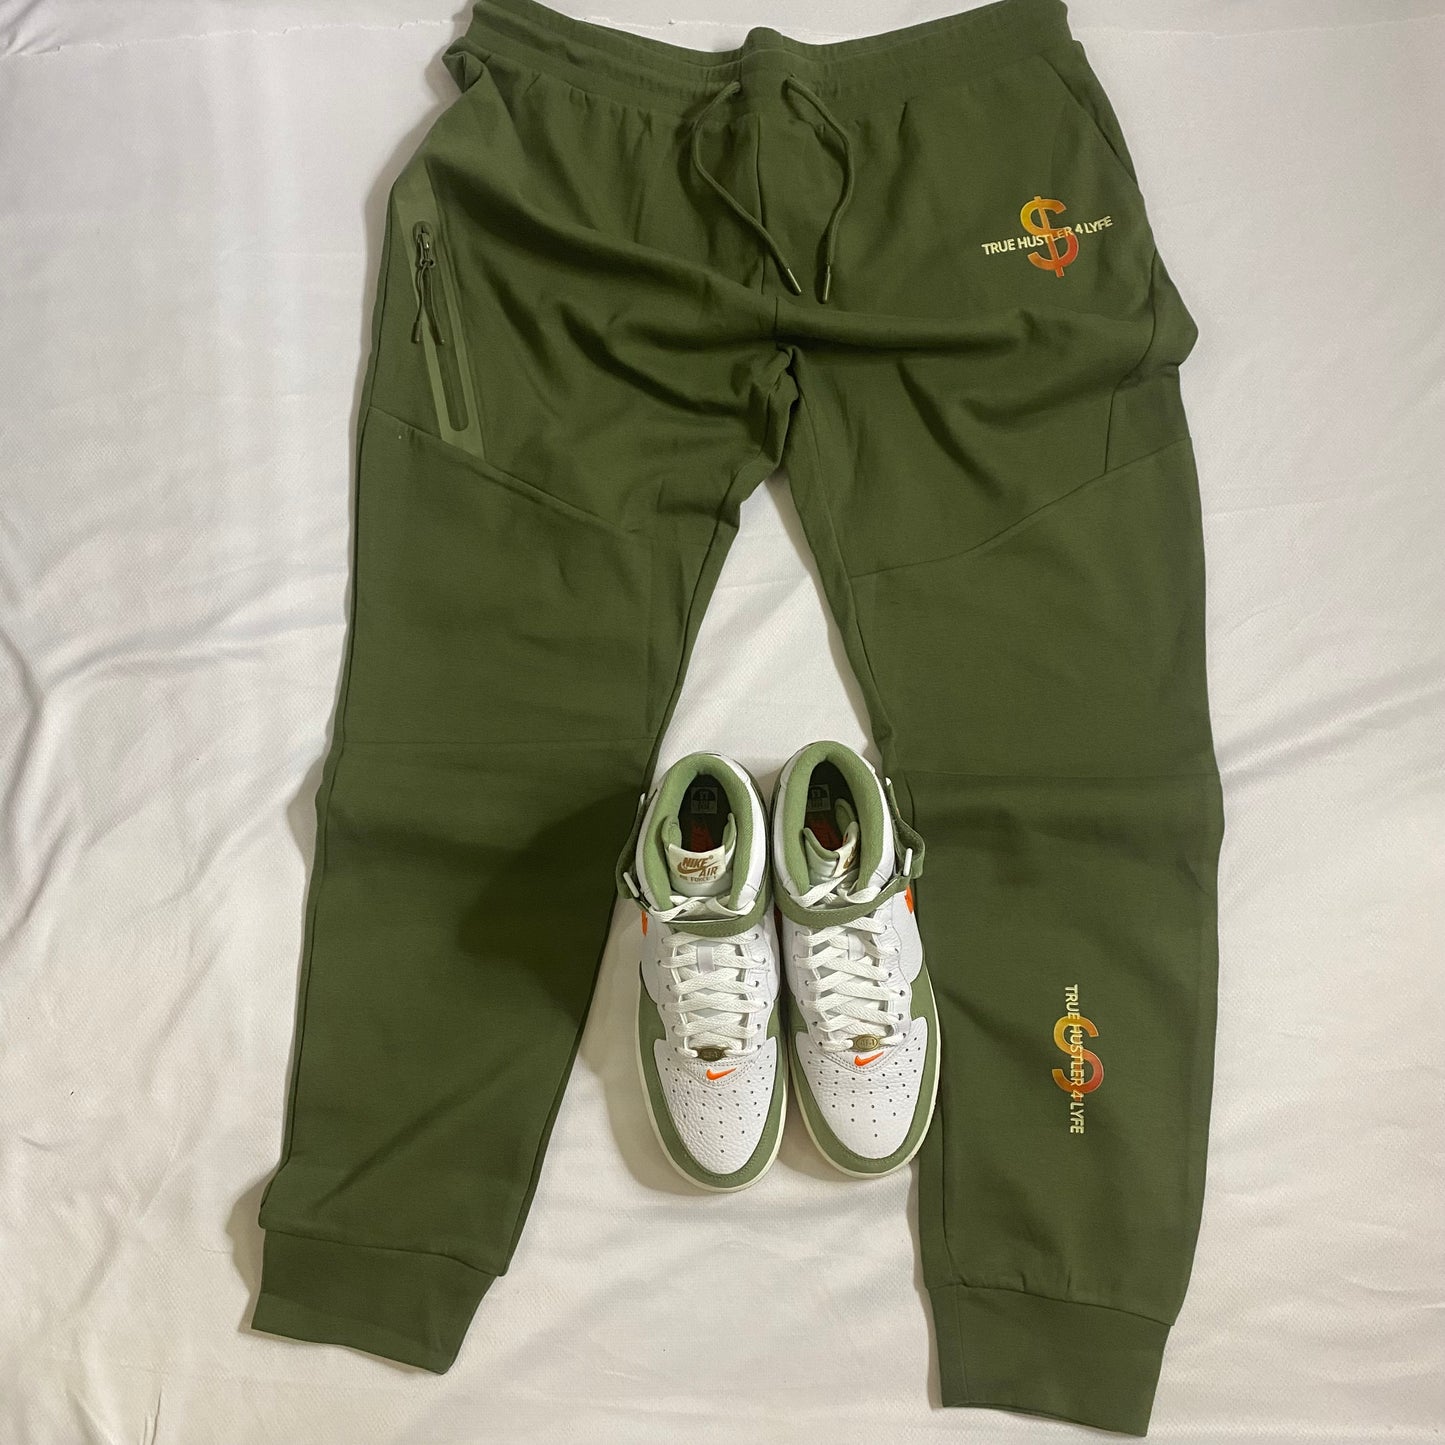 True Hustler 4 Lyfe Olive Green Tech Jogging Suit (Unisex)